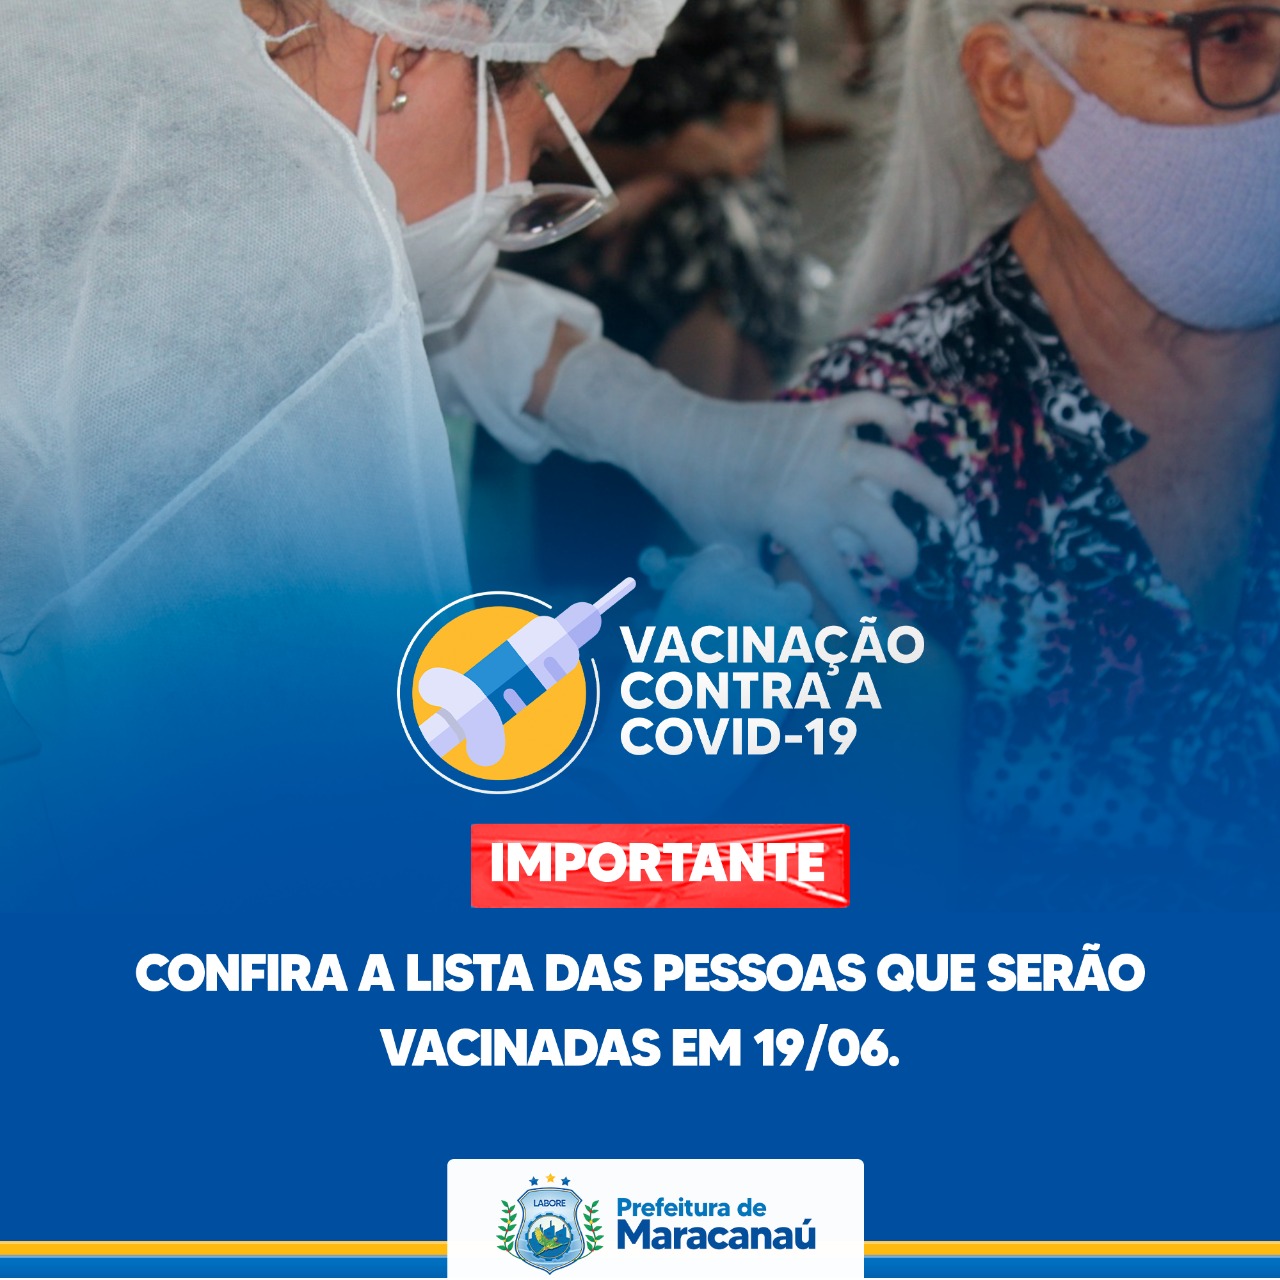 You are currently viewing Confira a lista das pessoas que serão vacinadas neste sábado, 19/06